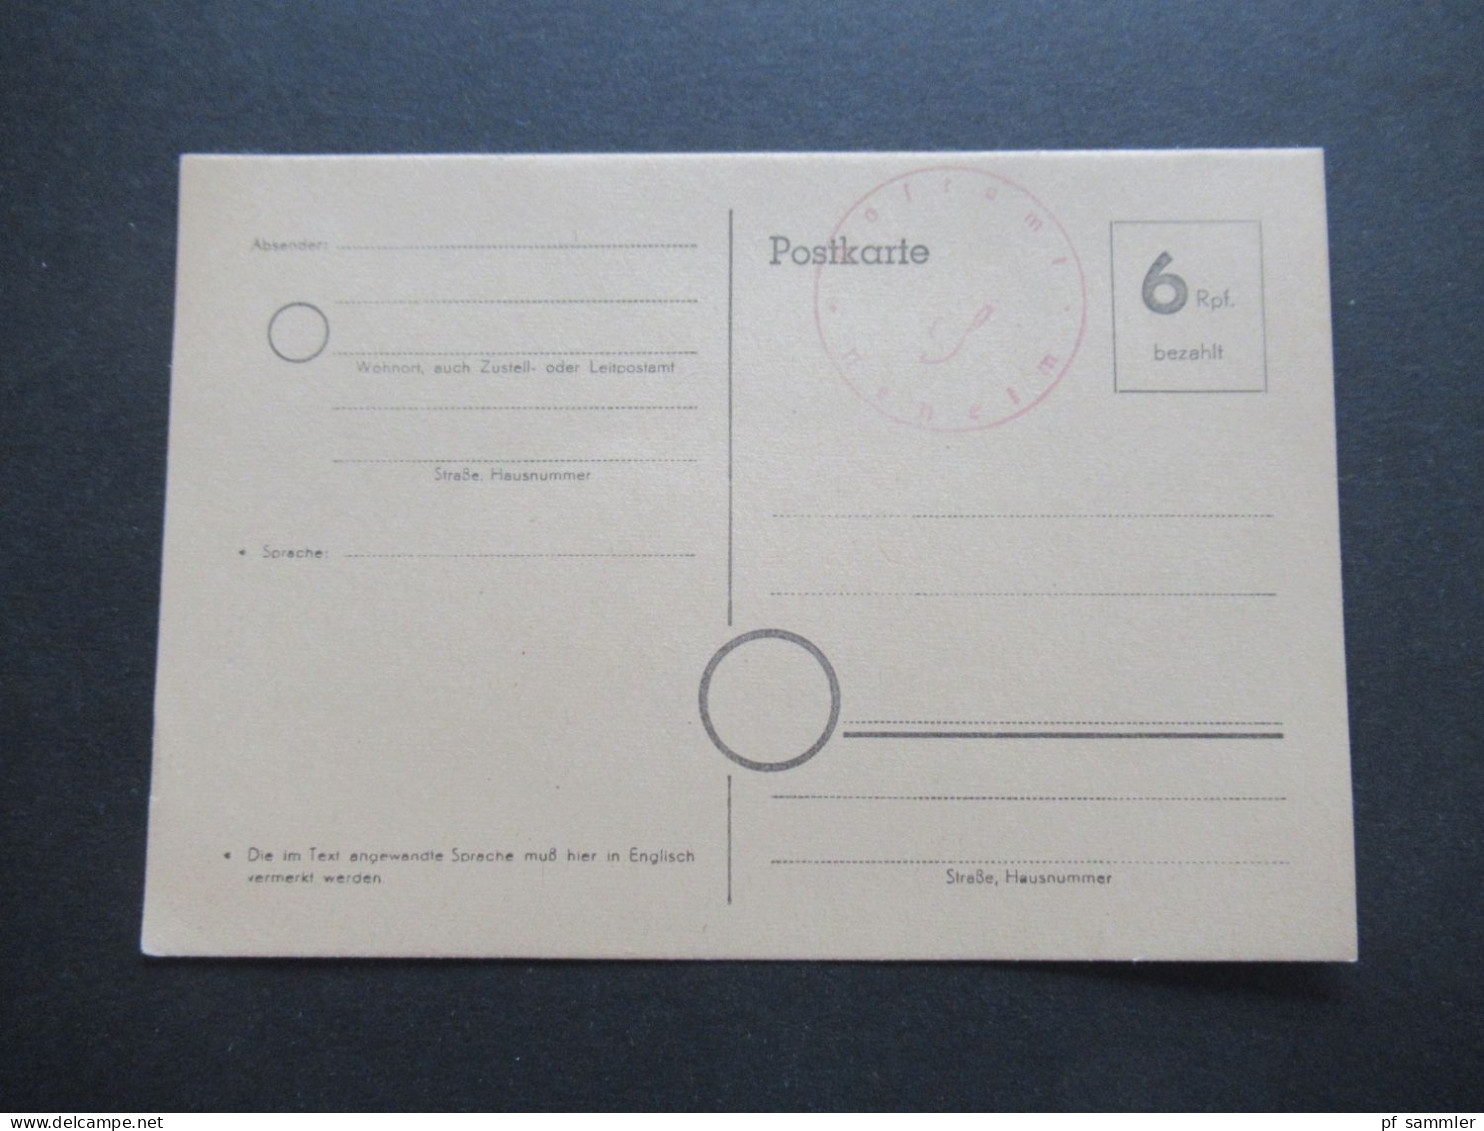 Bizone Behelfsausgabe Ganzsache 6 Rpf. Bezahlt Und Stempel Postamt Neheim / Ungebraucht / 1945 / 1946 - Provisional Issues British Zone